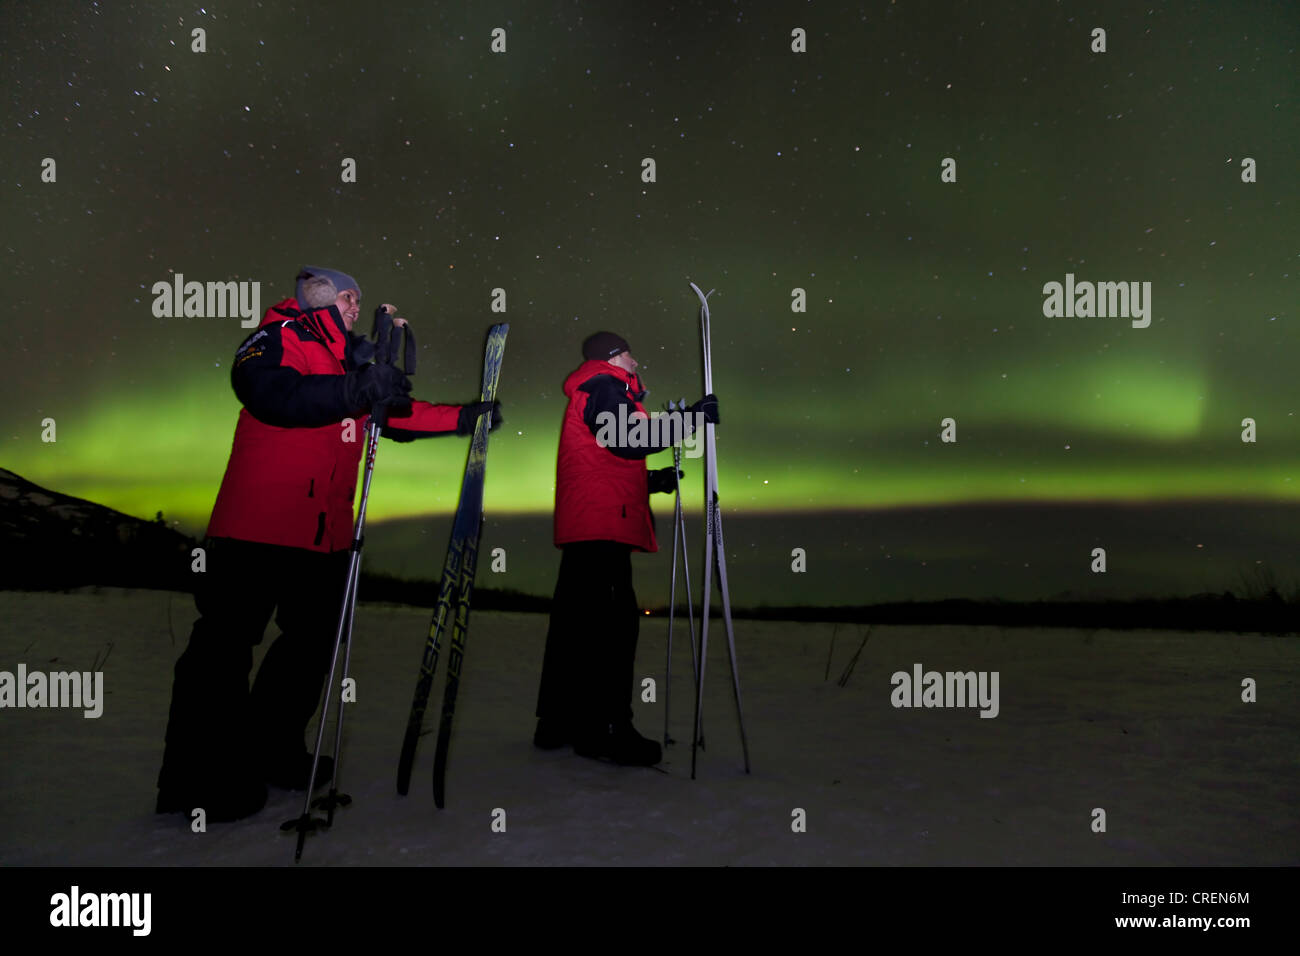 Coppia giovane, donna e uomo, sci di fondo, la visione di vorticazione polare settentrionale luci, Aurora boreale, verde Foto Stock